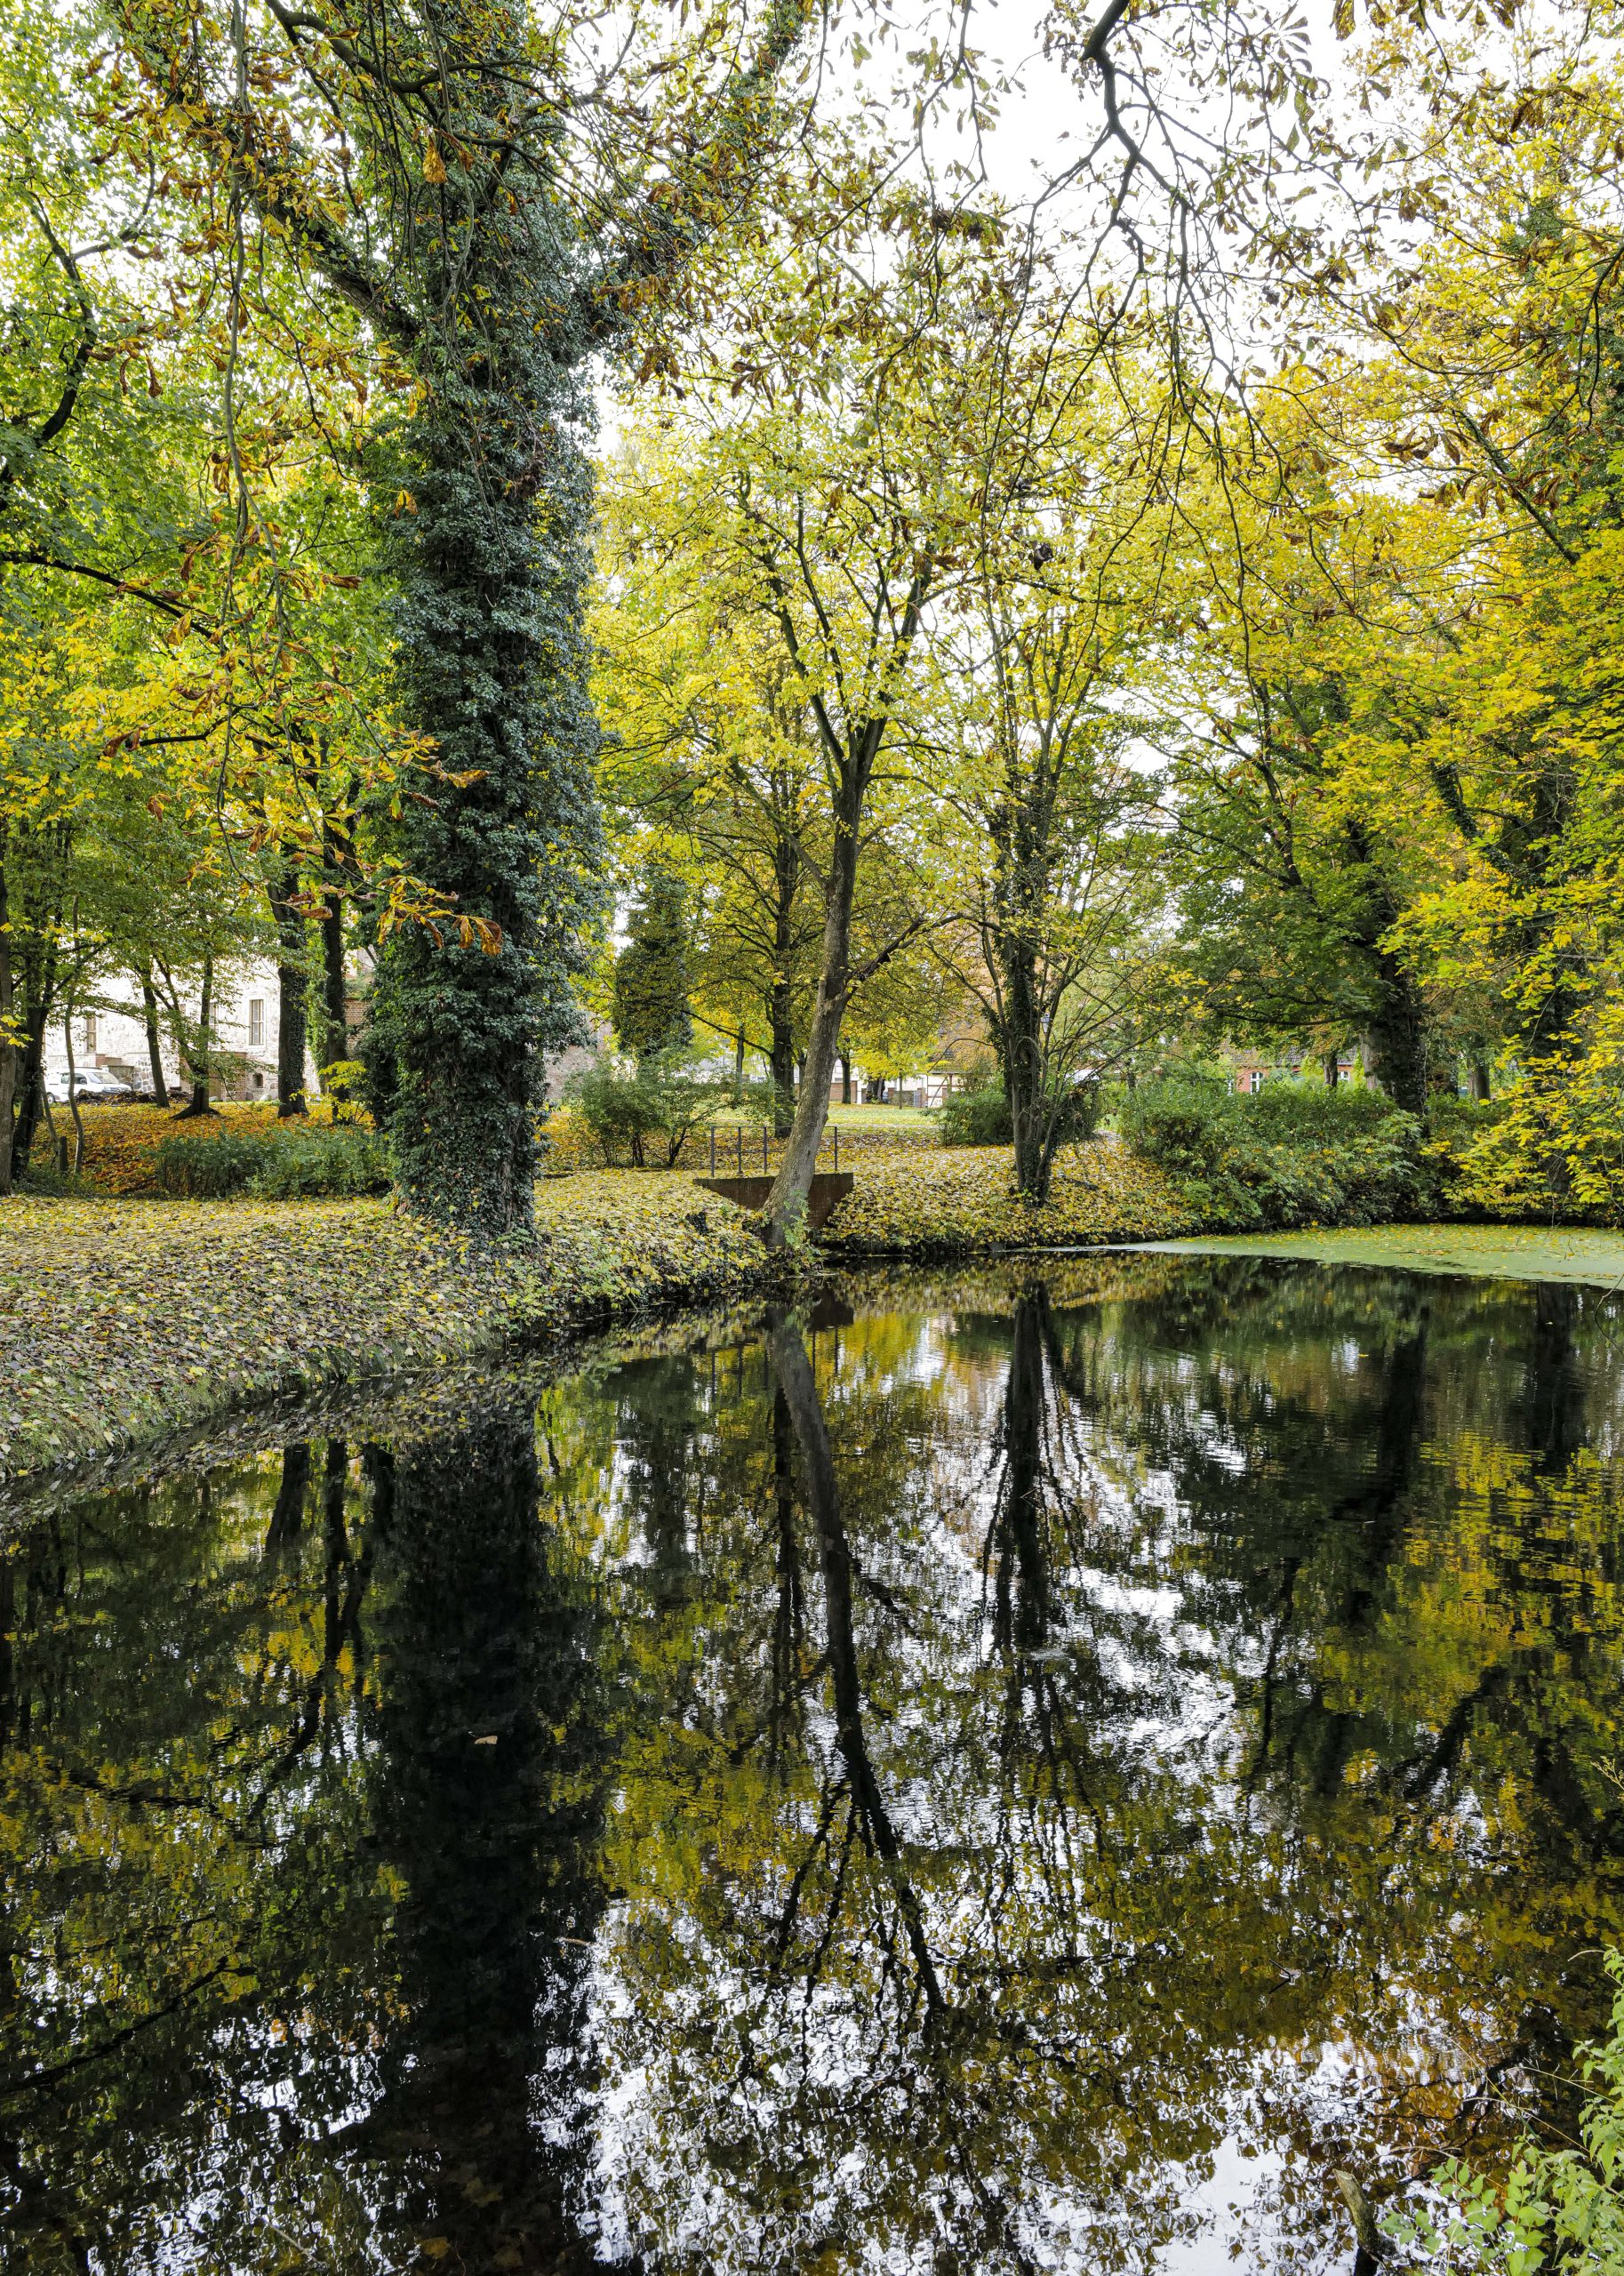 Freyenstein Pond in the palace ground